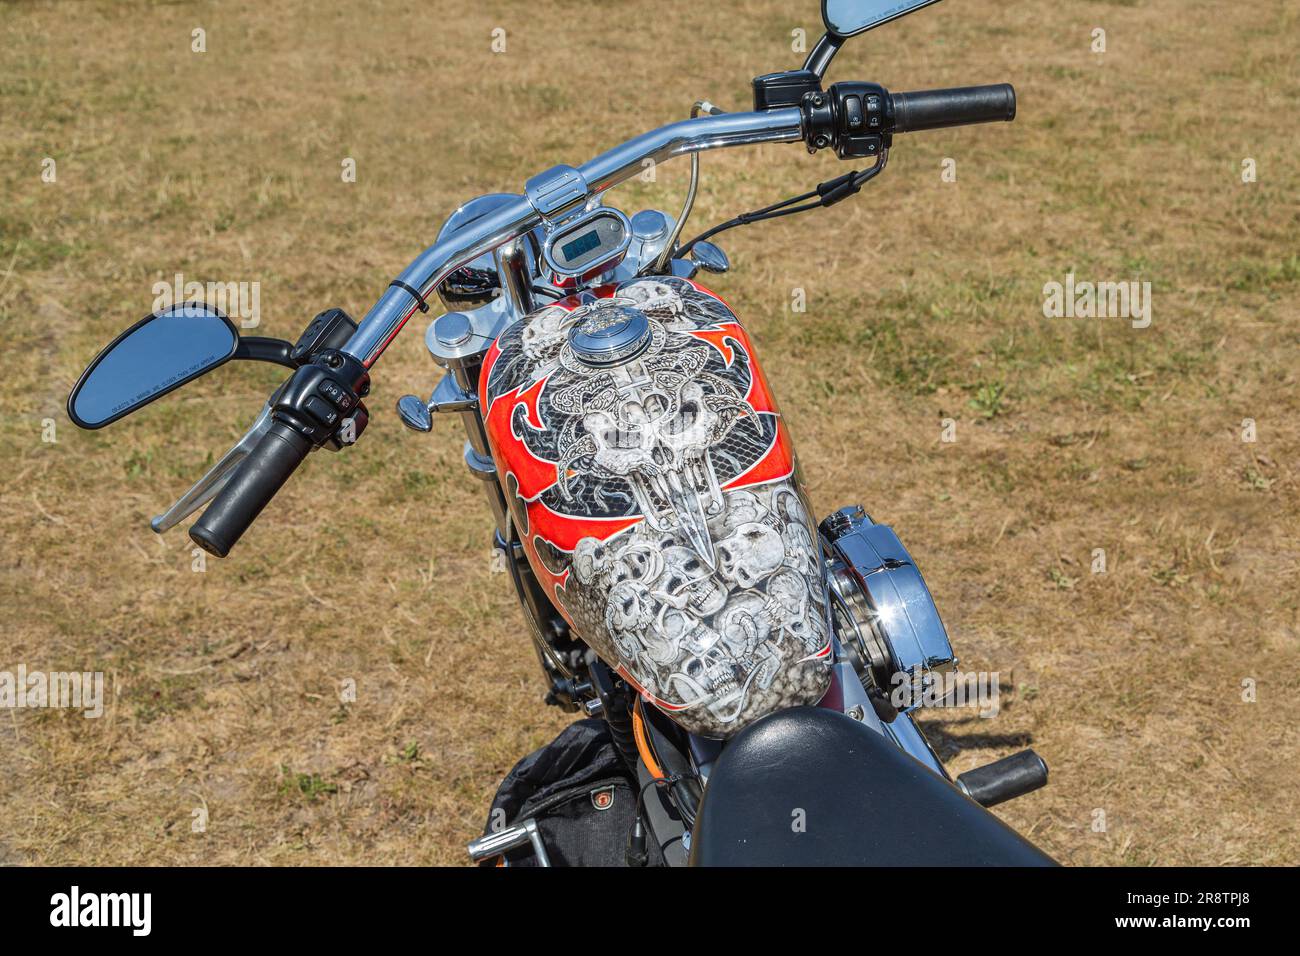 Nahaufnahme eines Motorrad-Benzintanks, der mit einem Schädel lackiert wurde. Stockfoto